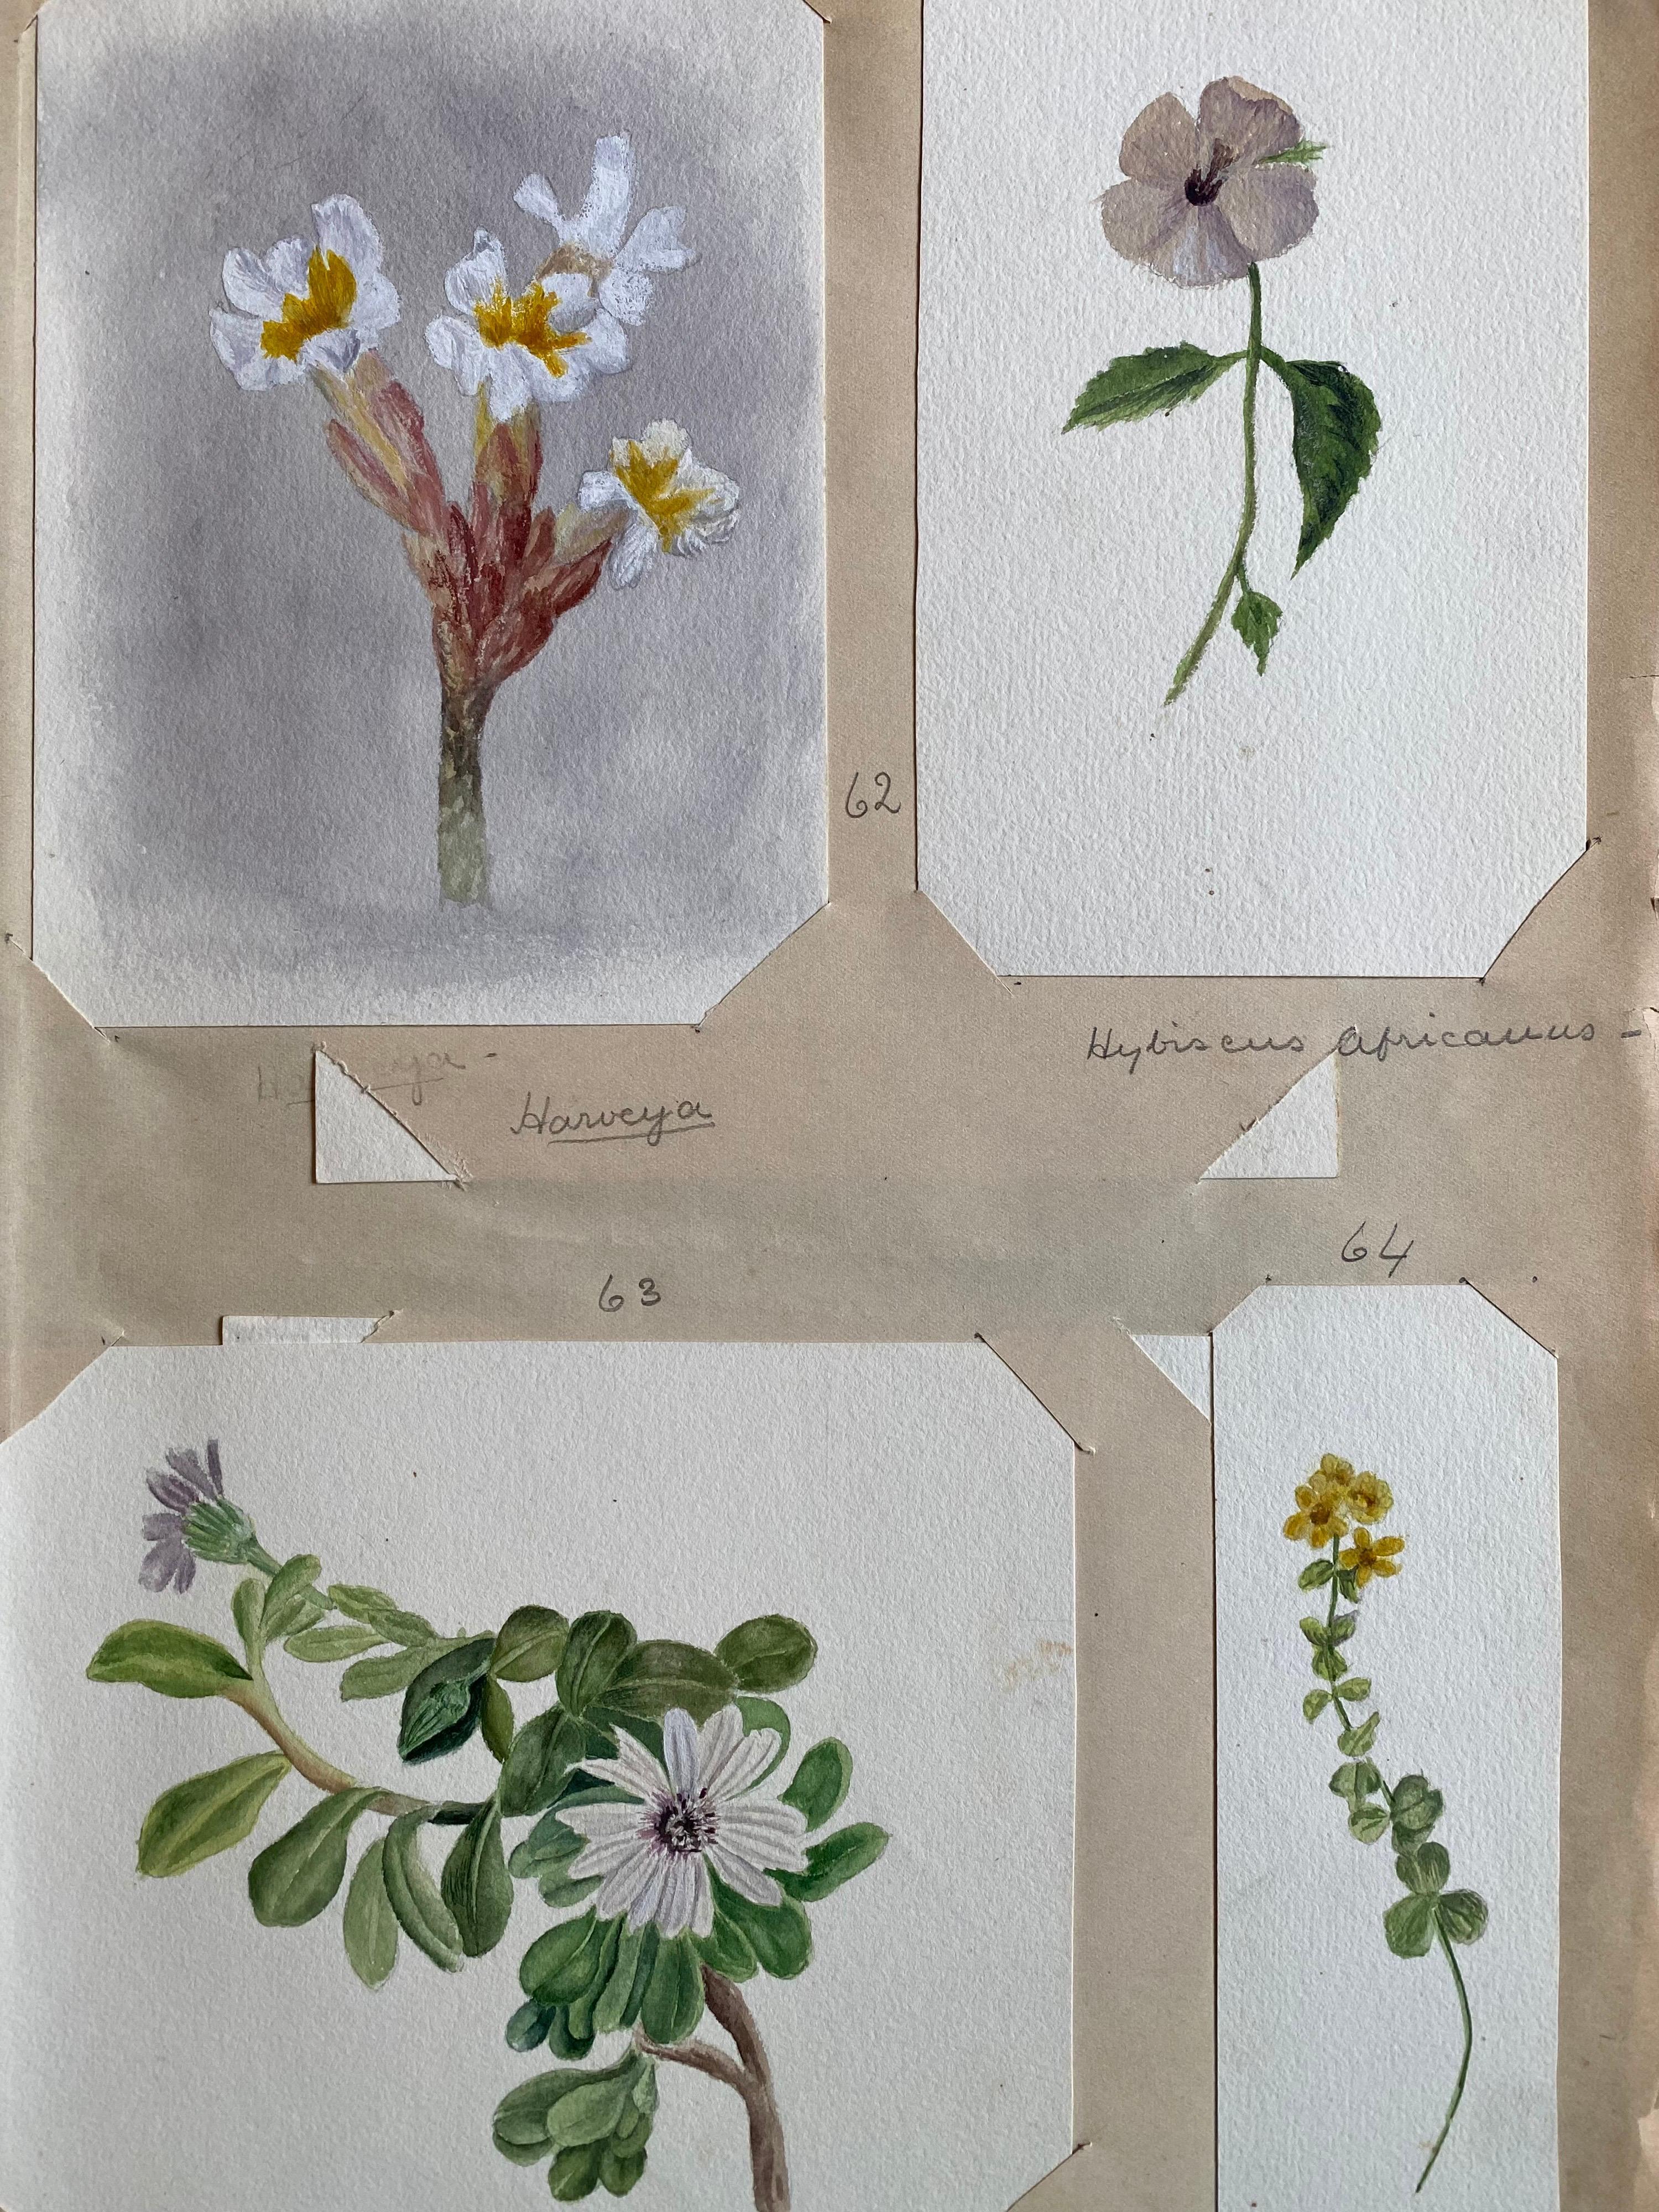 Satz von vier sehr schönen originalen englischen botanischen Aquarellen, die diese schöne Darstellung einer Blume/Pflanze zeigen. Das Werk stammt aus einer Privatsammlung in Surrey, England, und war Teil eines Albums mit Werken, die der Künstler in